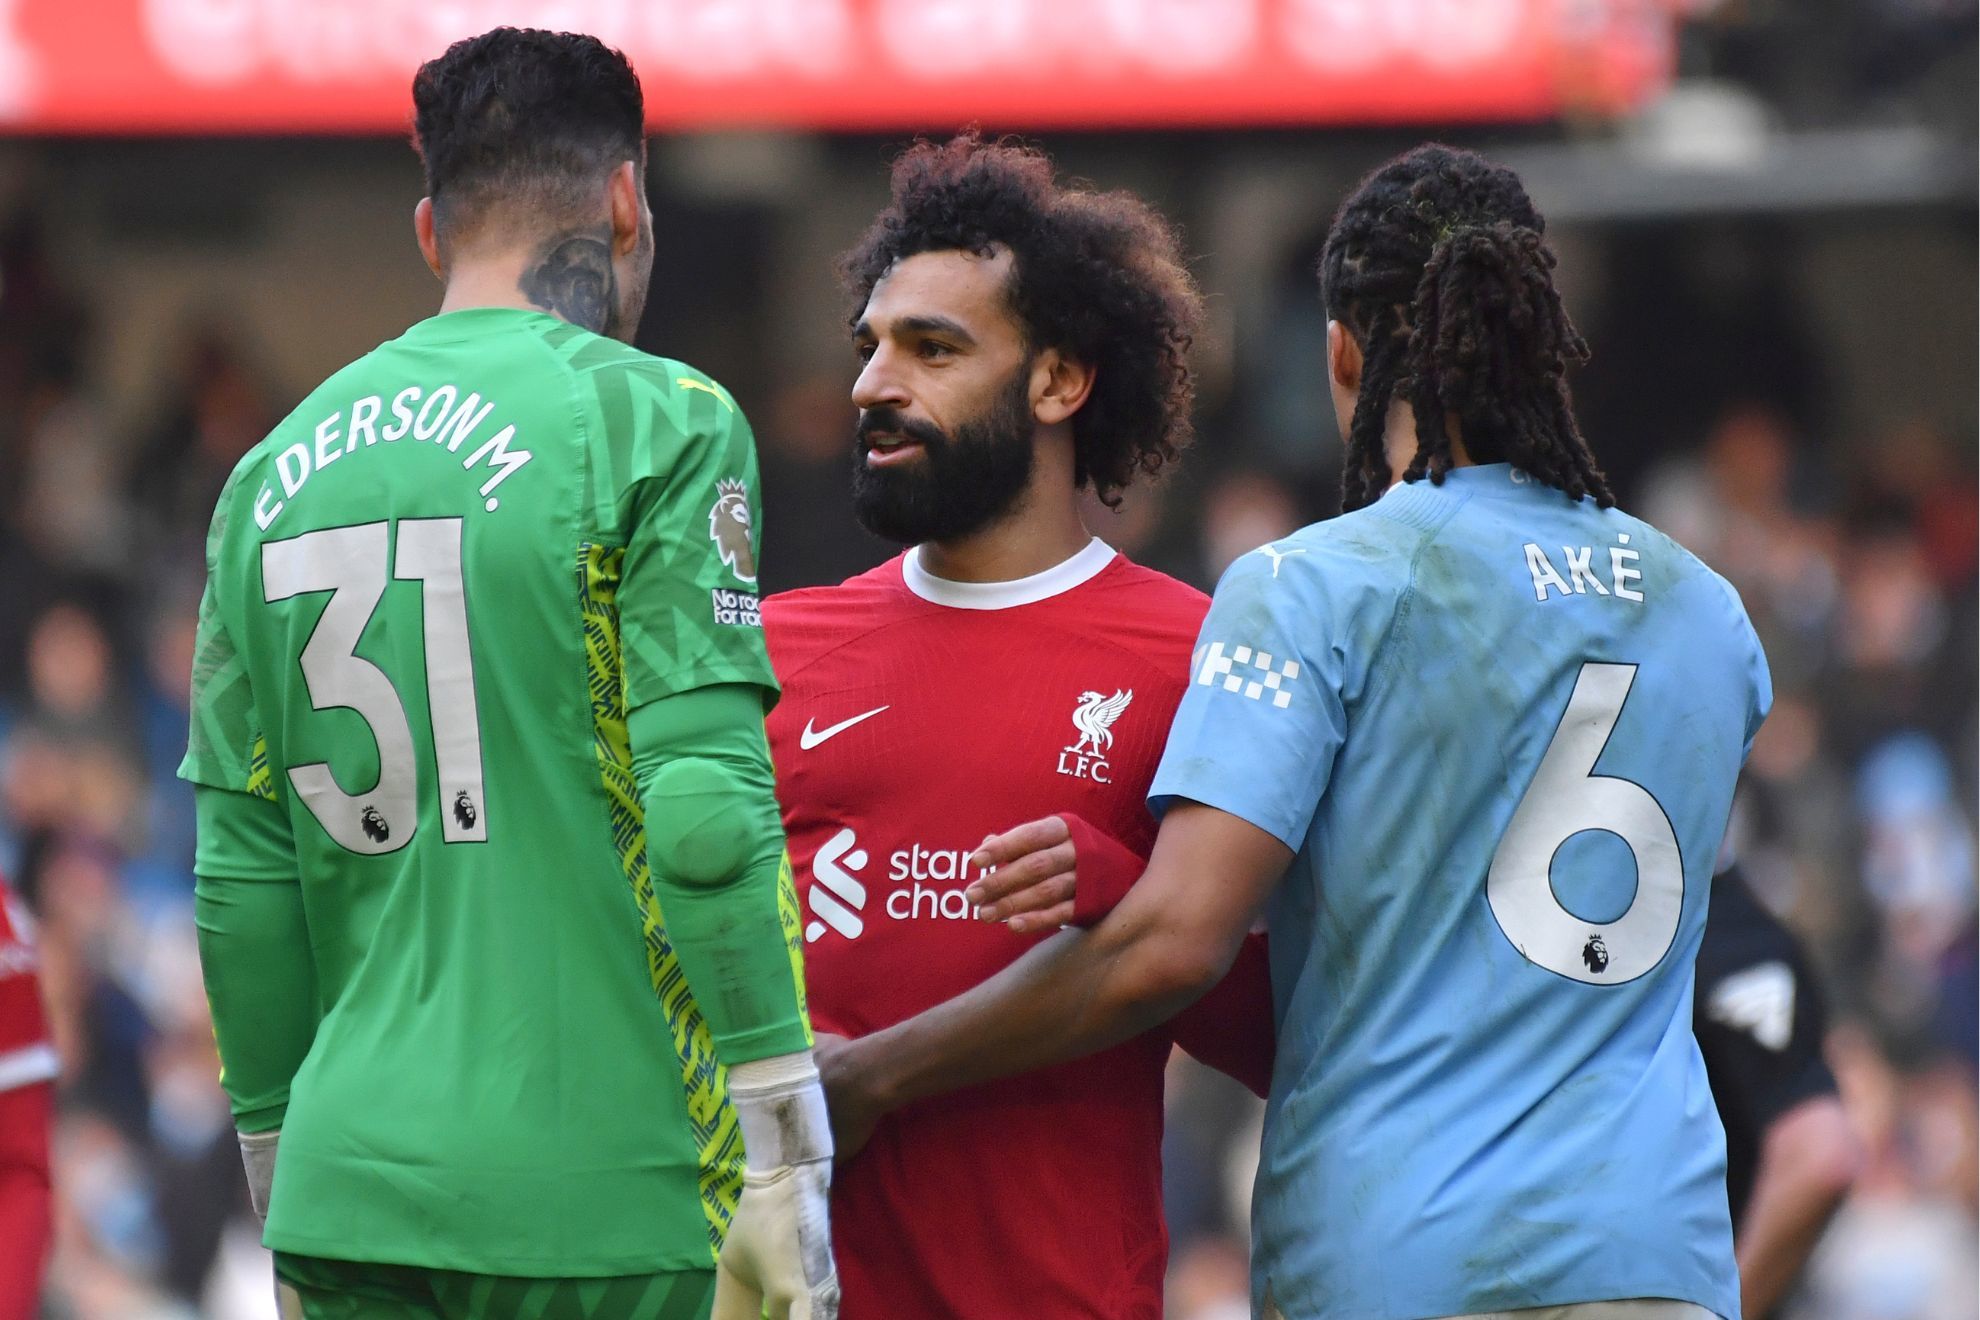 Liverpool - Manchester City, en directo | Premier League, hoy en vivo